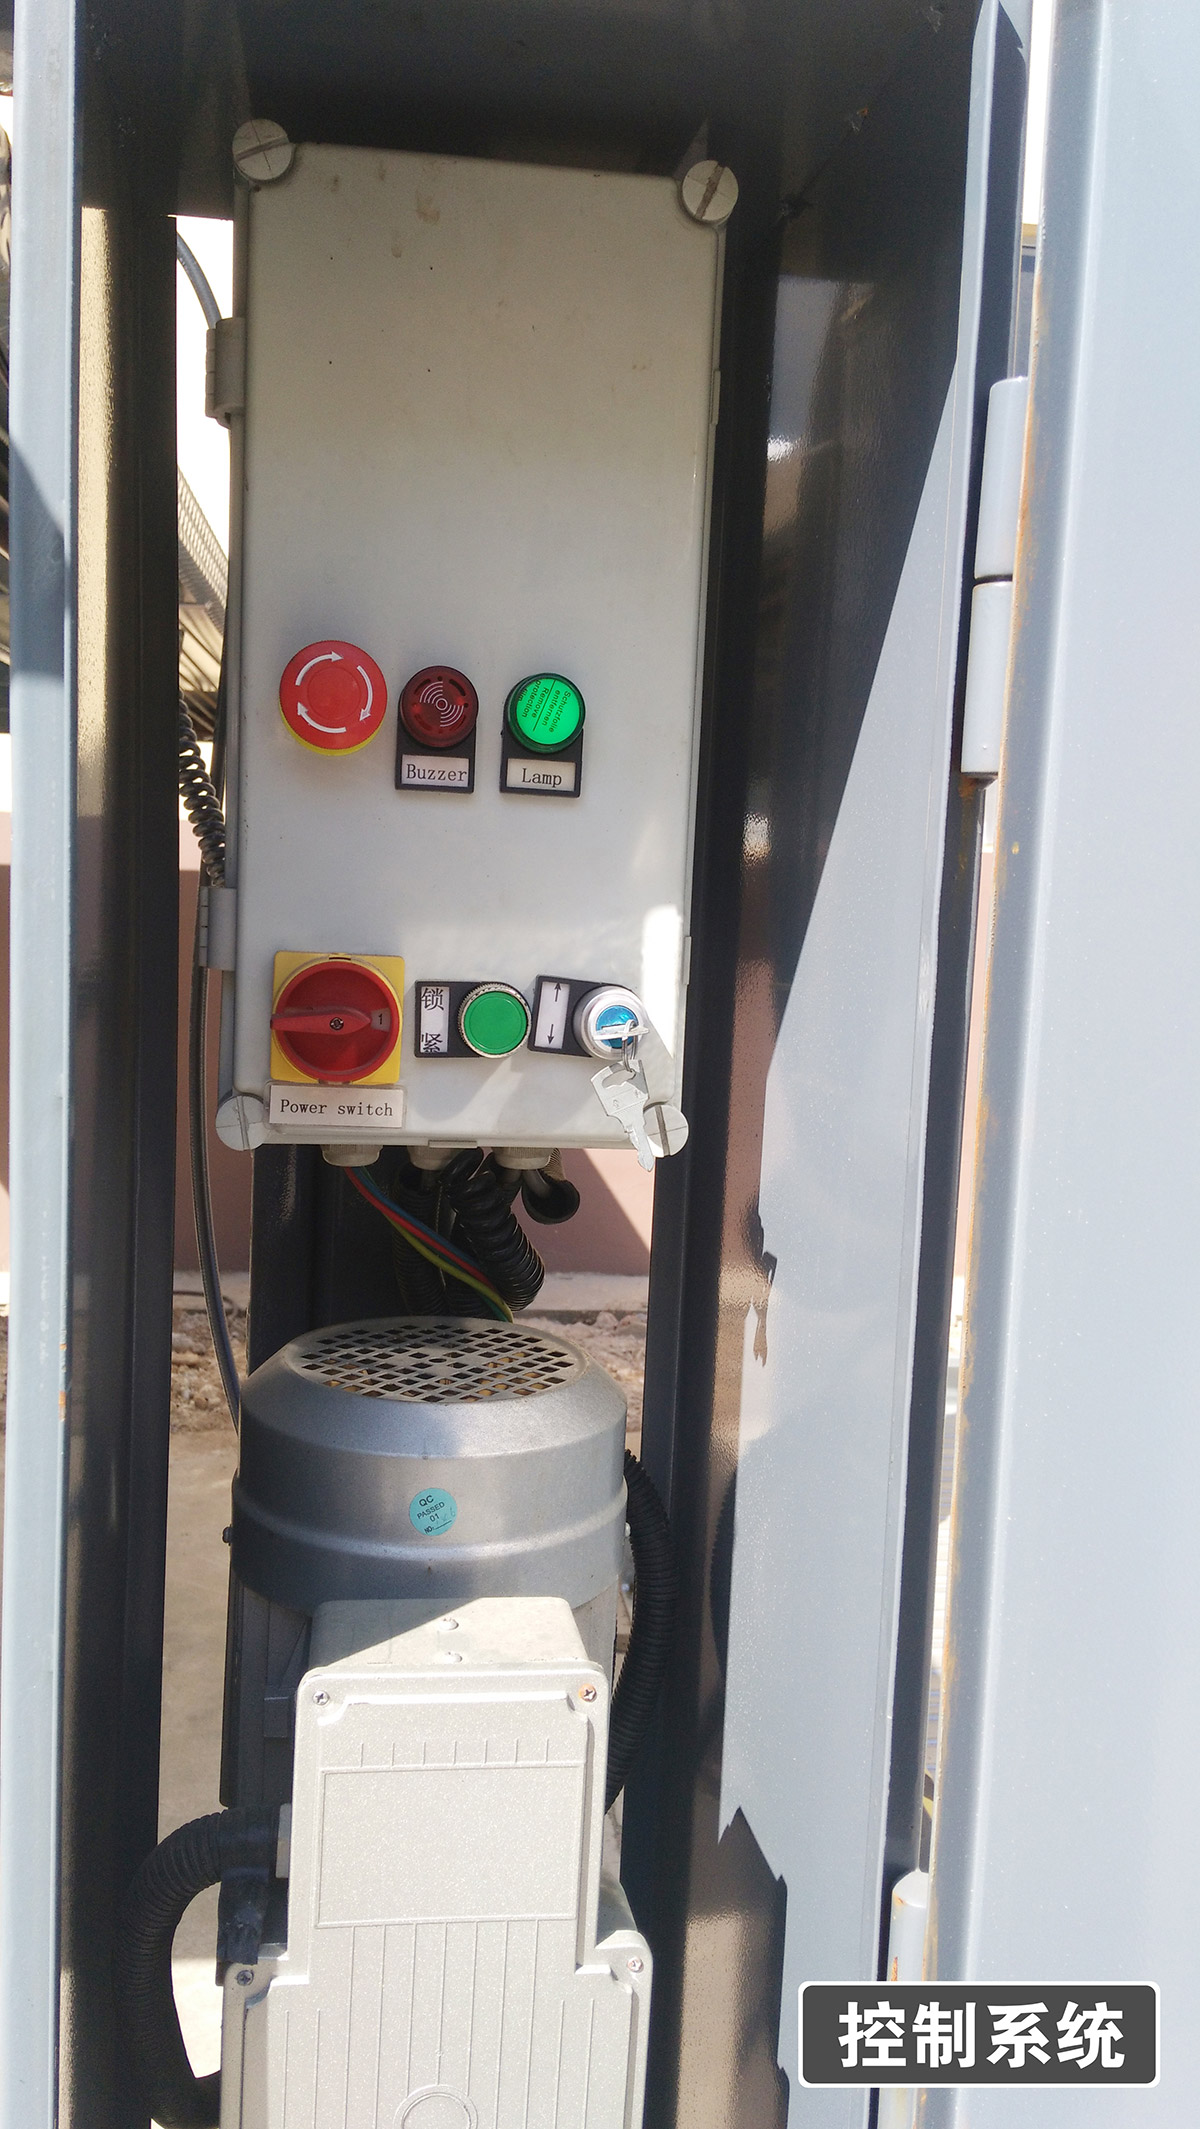 机械车位四柱简易升降机械停车设备控制系统.jpg